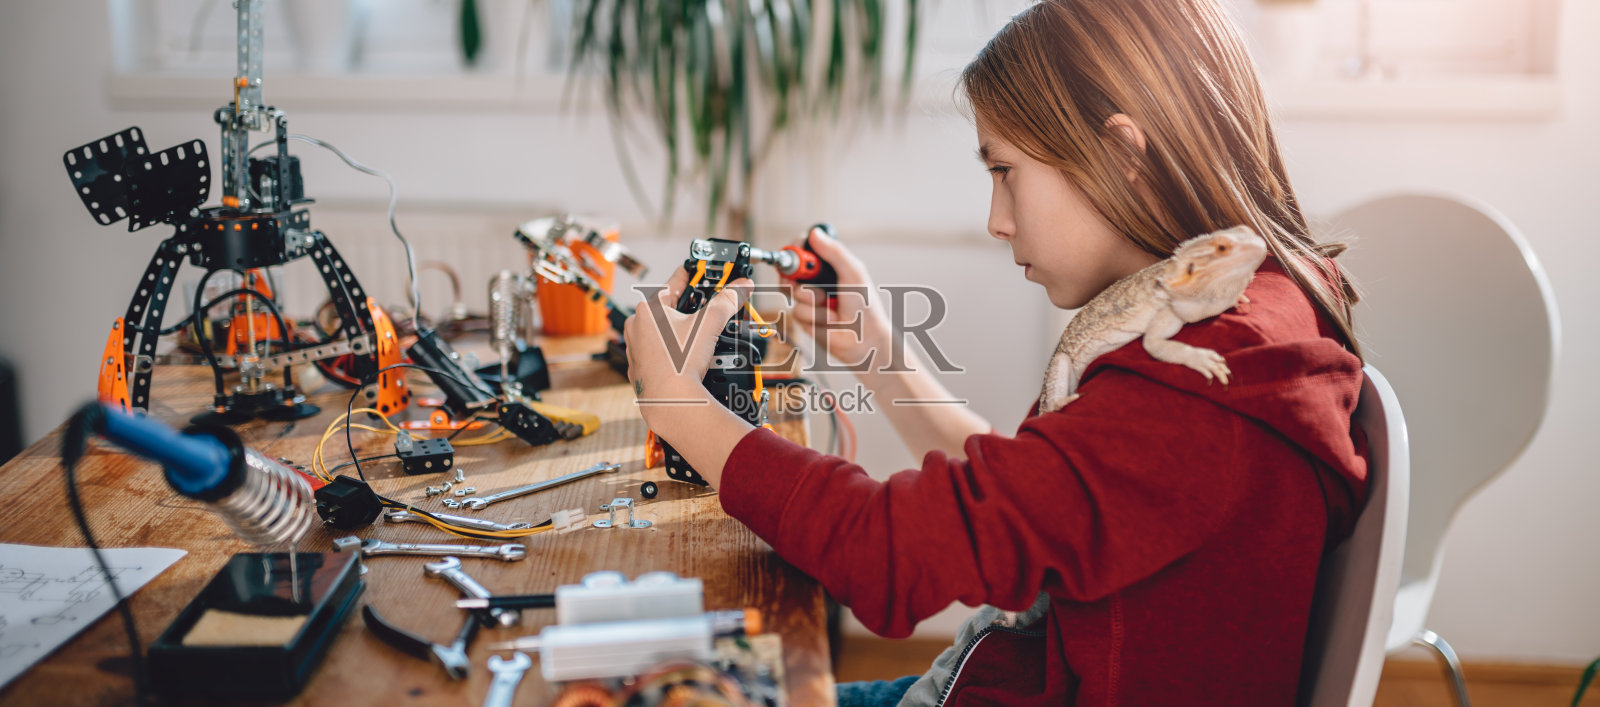 女孩建筑机器人照片摄影图片